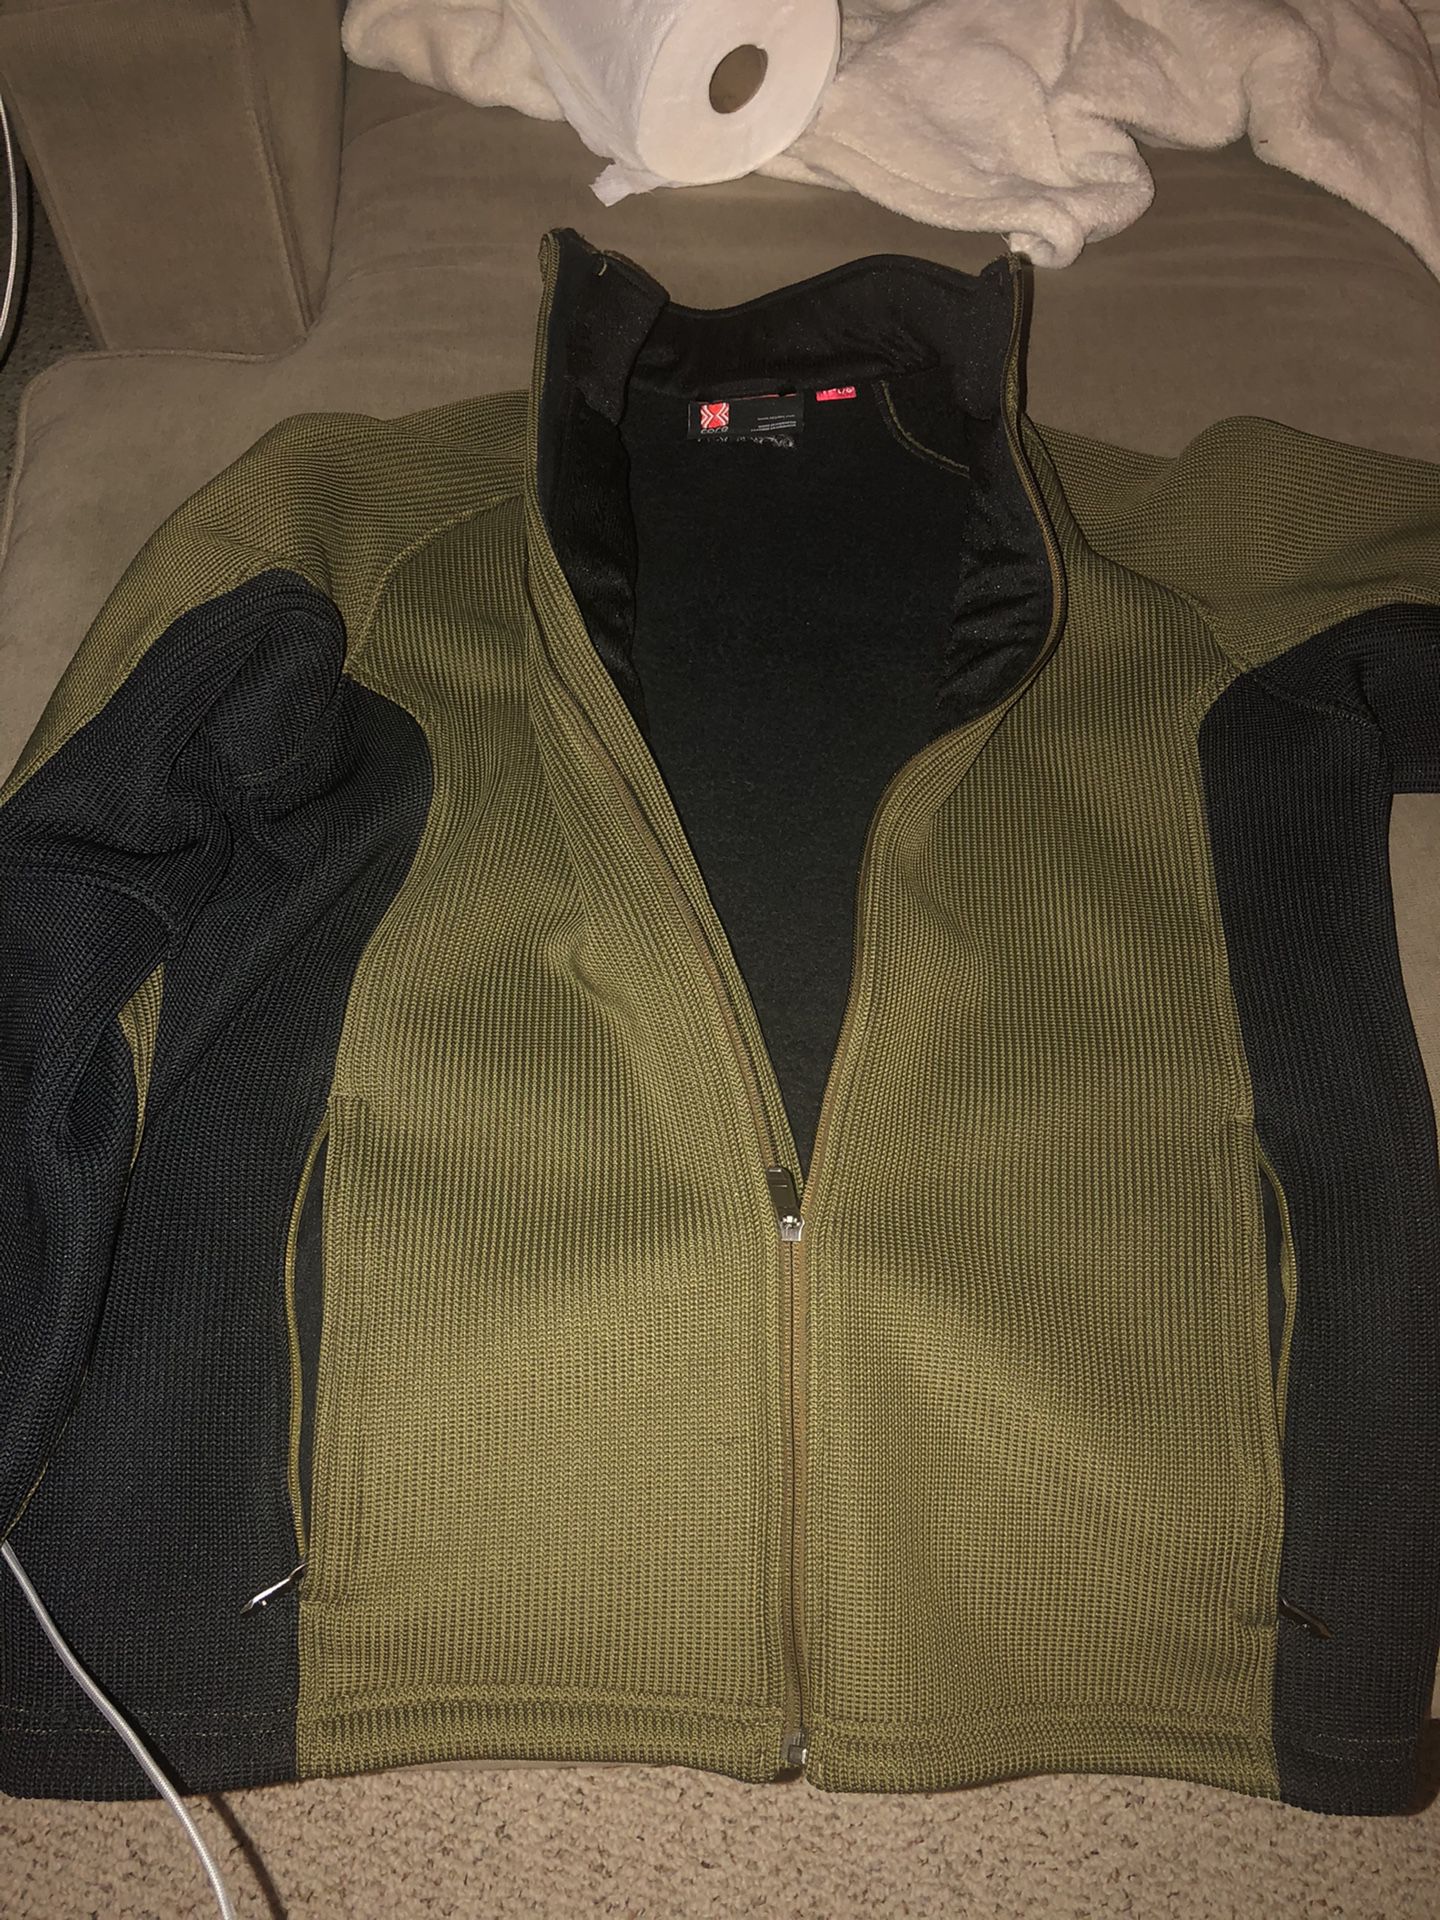 Men’s Spyder core sweater jacket size L